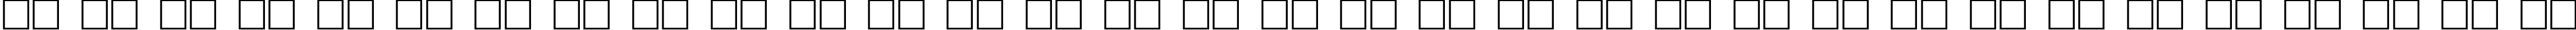 Пример написания русского алфавита шрифтом Woodcut